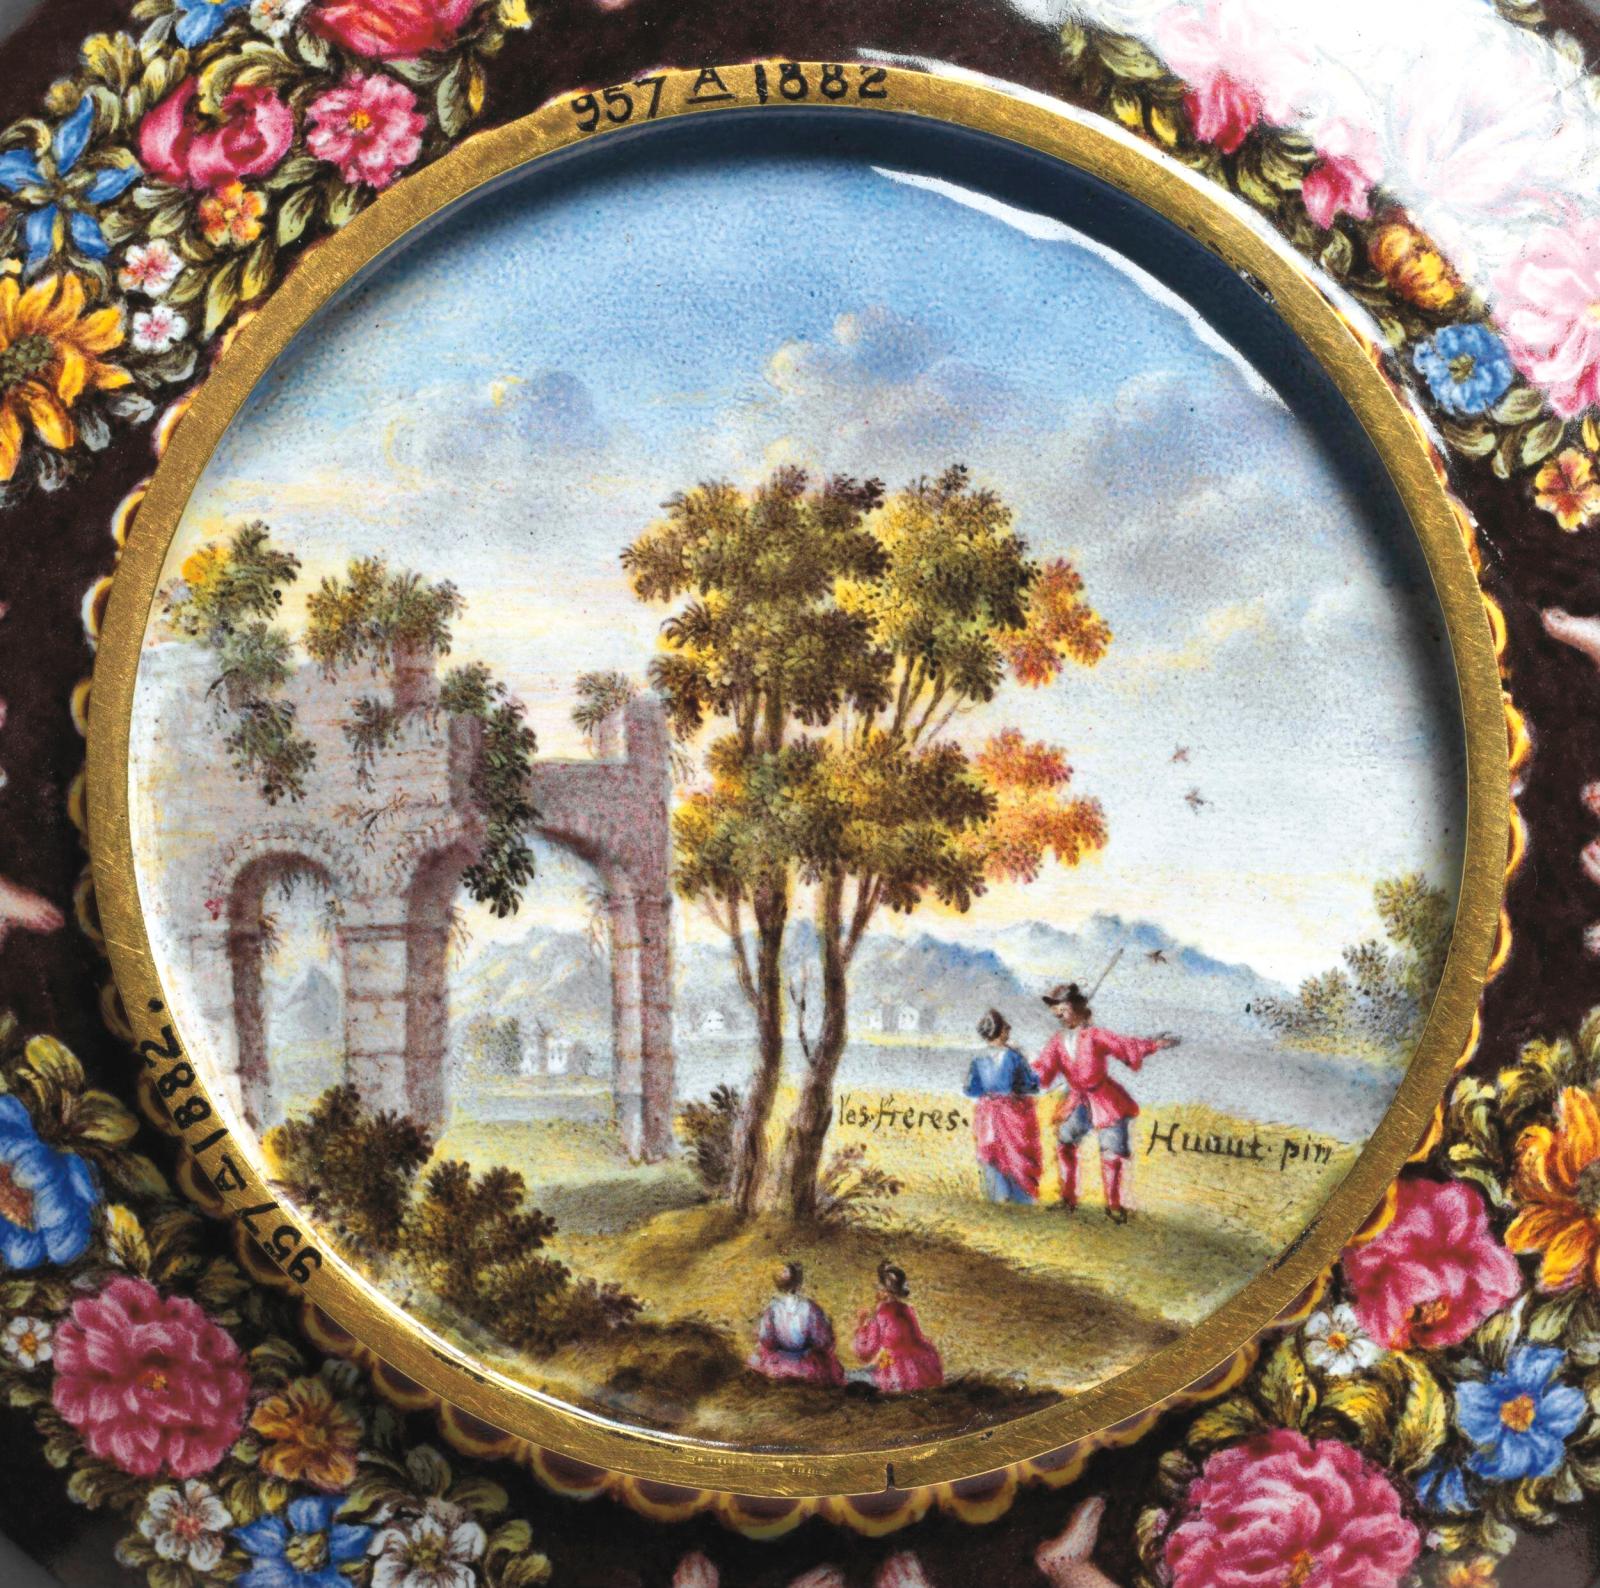 Jean-Pierre (1655-1723) et Ami Huaut (1657-1724), tasse et soucoupe avec paysages et scènes mythologiques, vers 1700-1720, détail, Londres